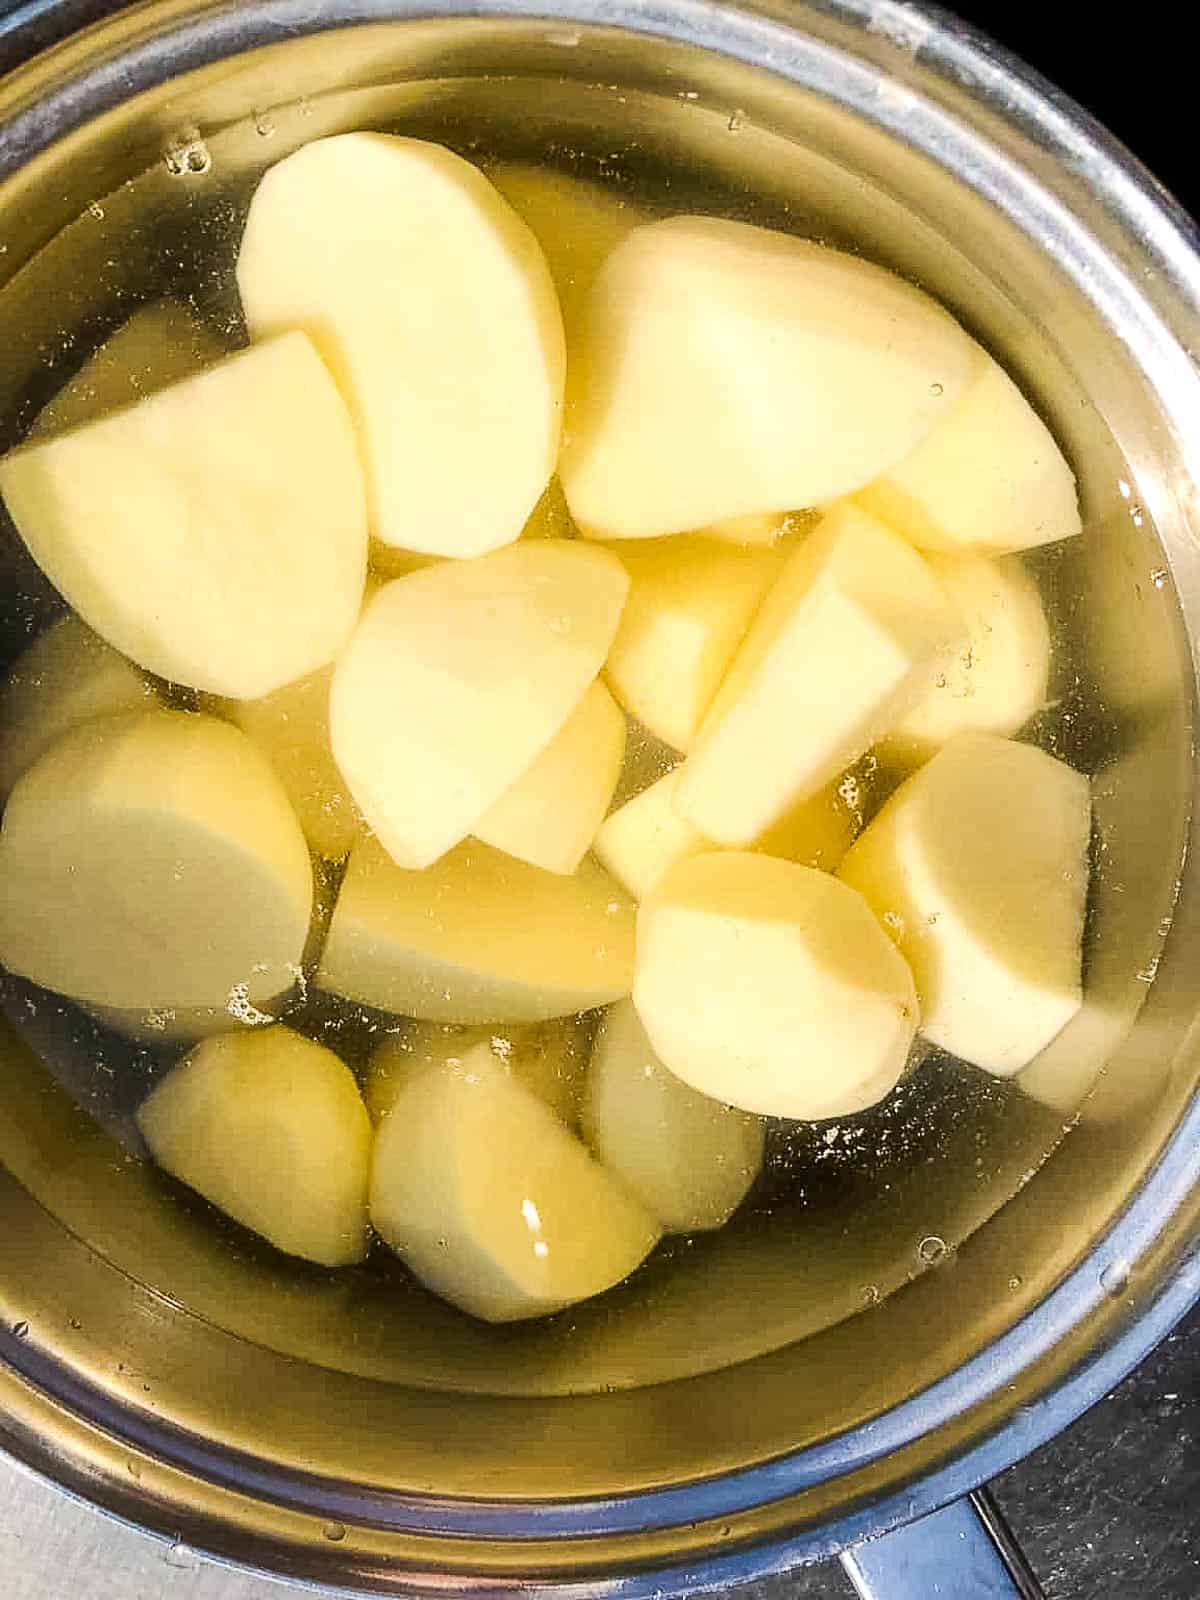 peeled potatoes in pan.